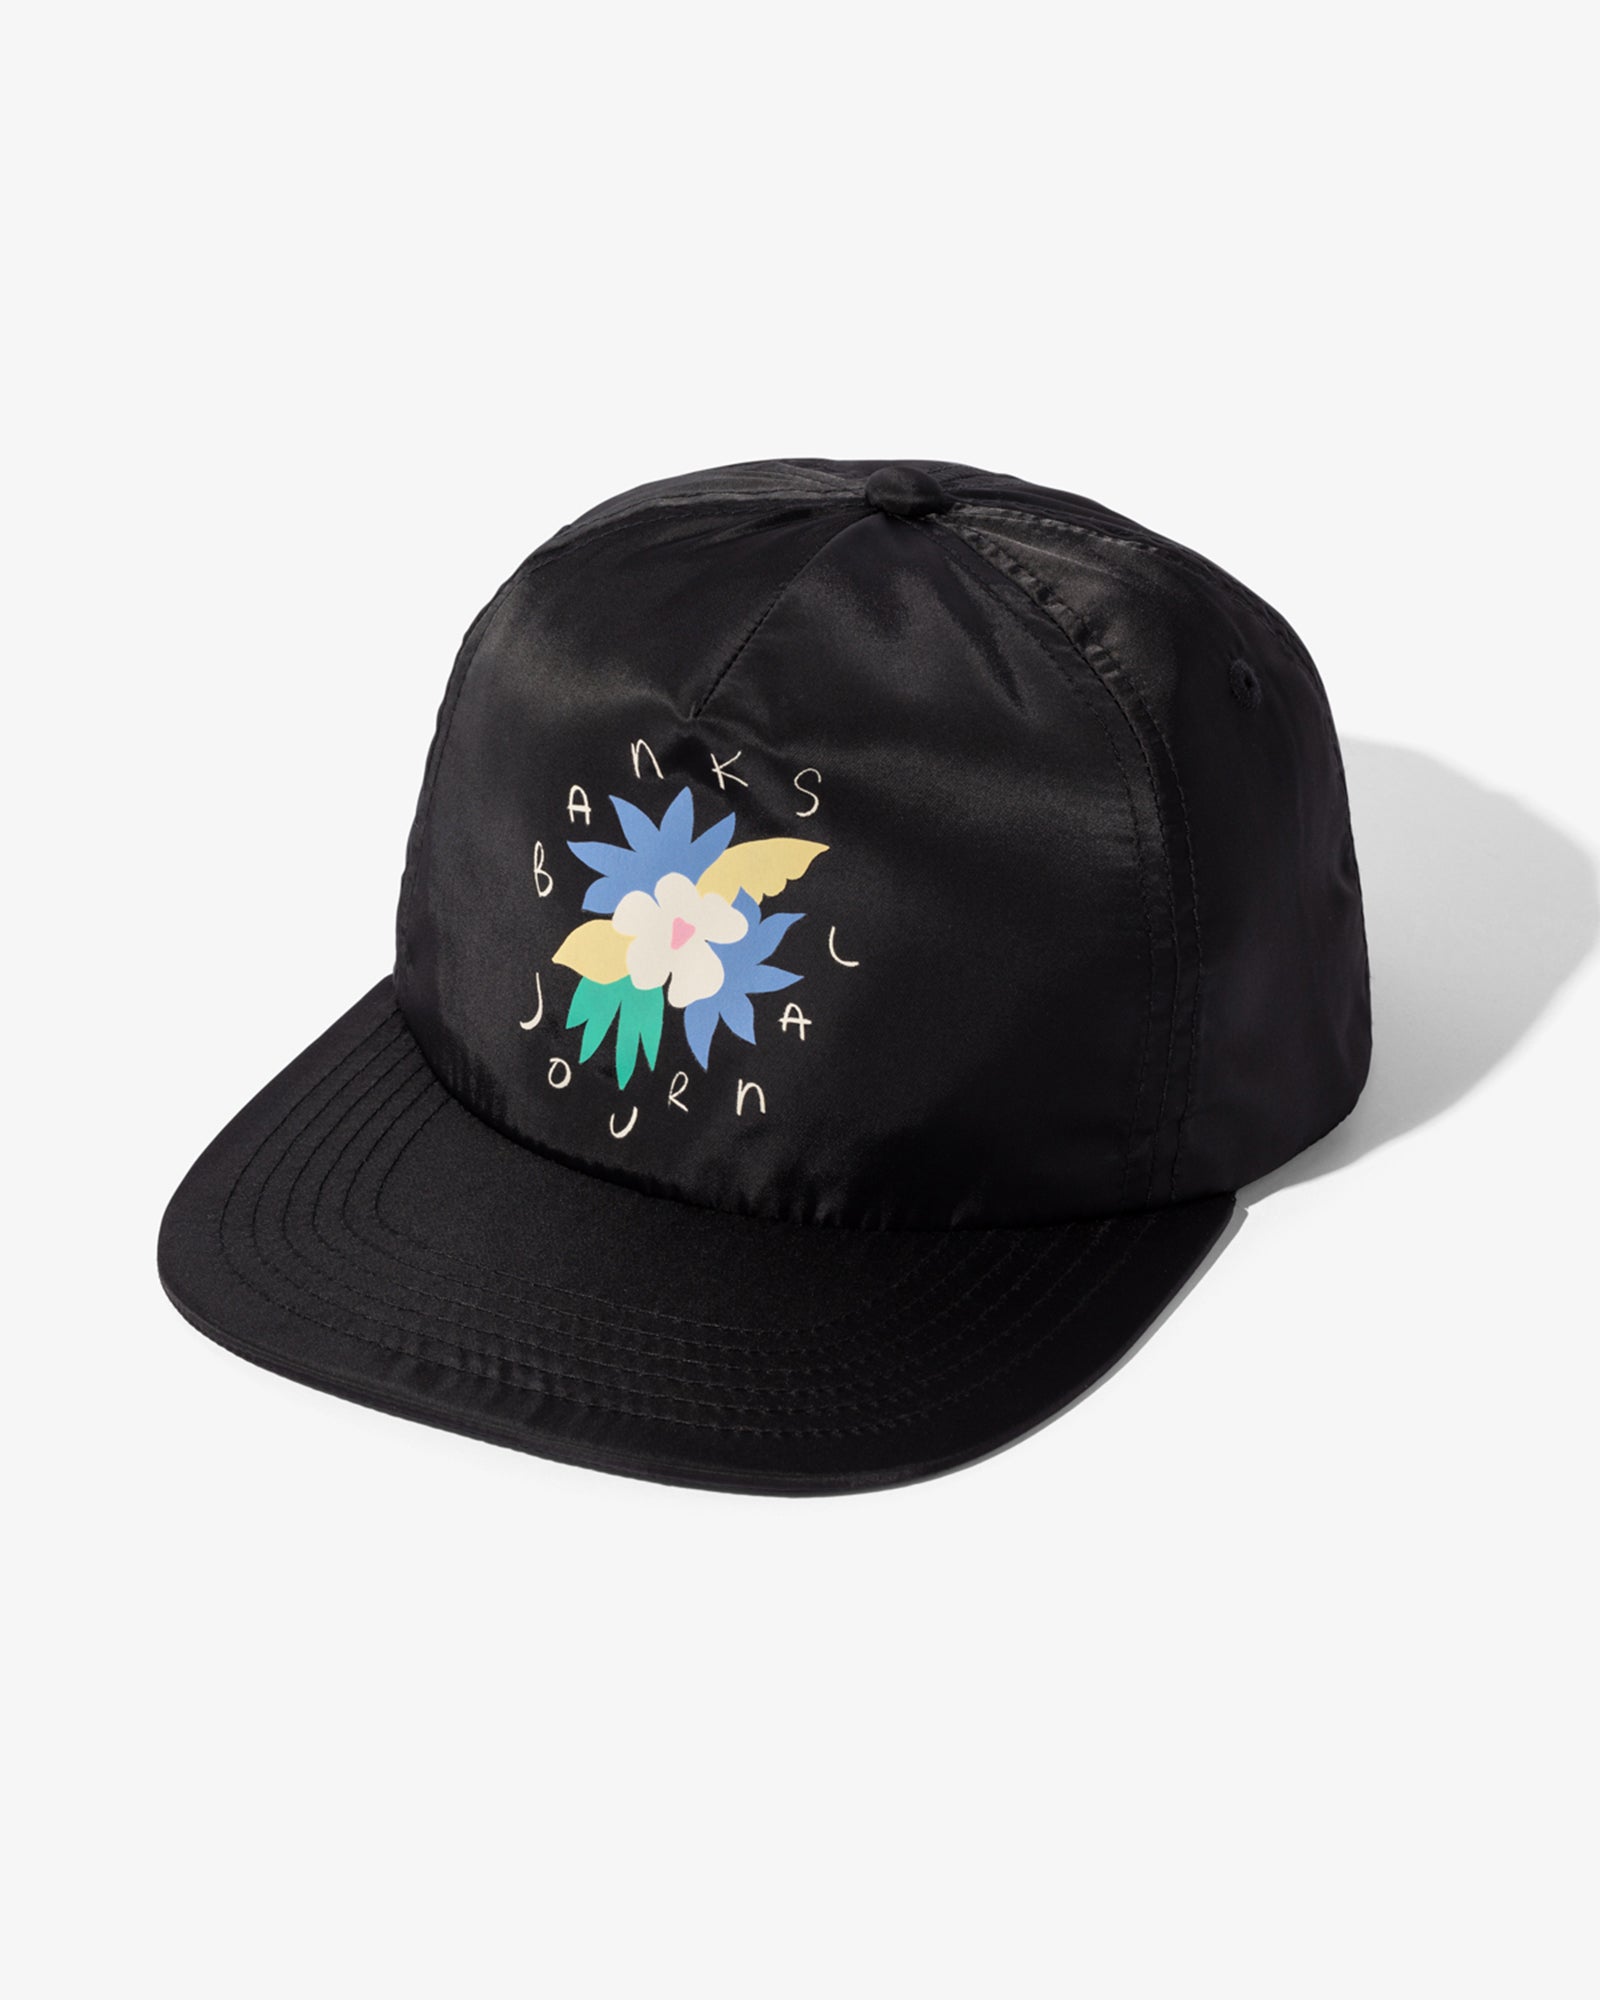 Islands Hat